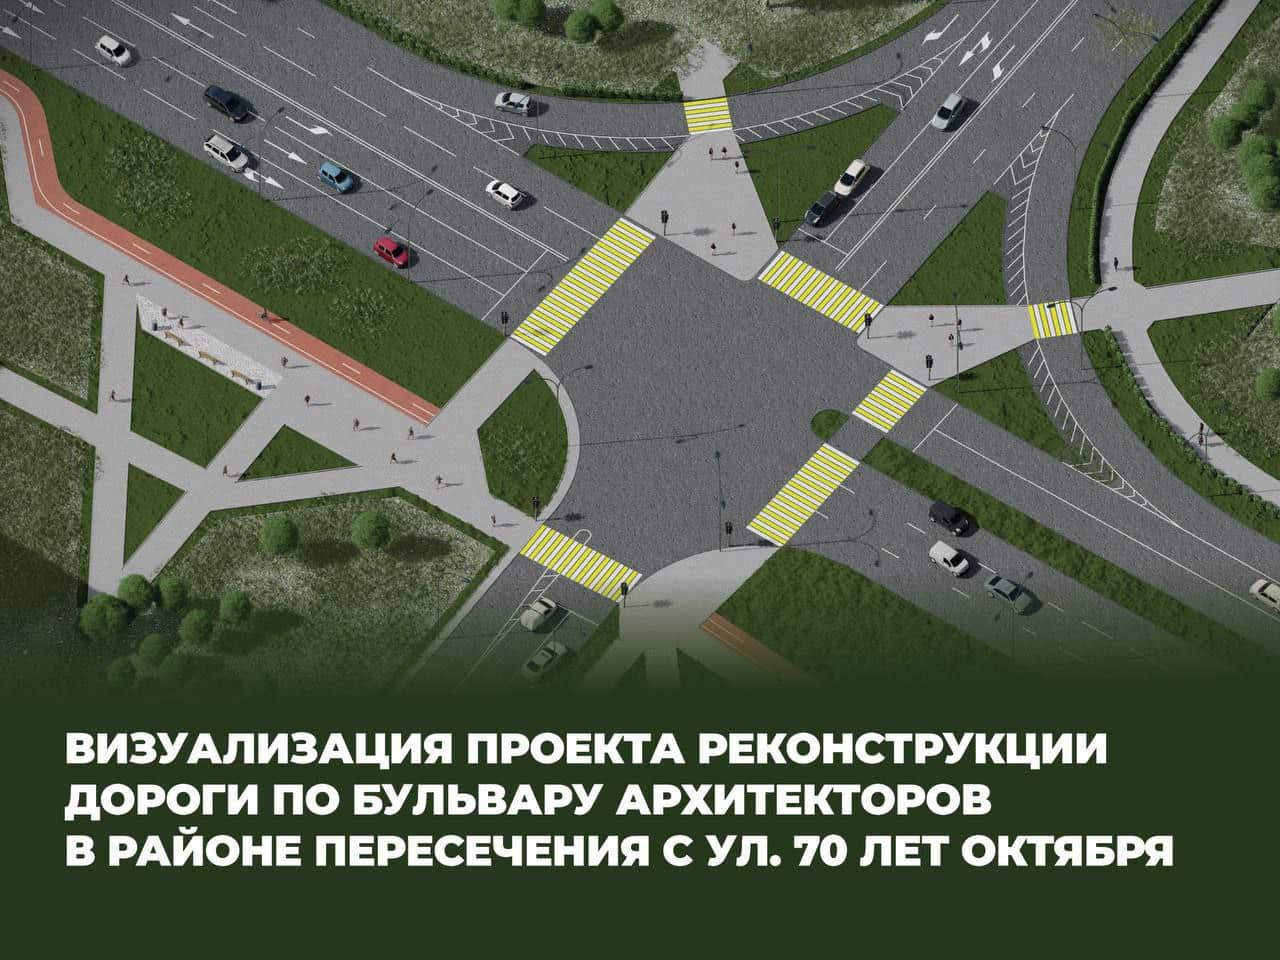 Омские власти решили сделать более понятной схему объезда перед закрытием перекрестка на Архитекторов